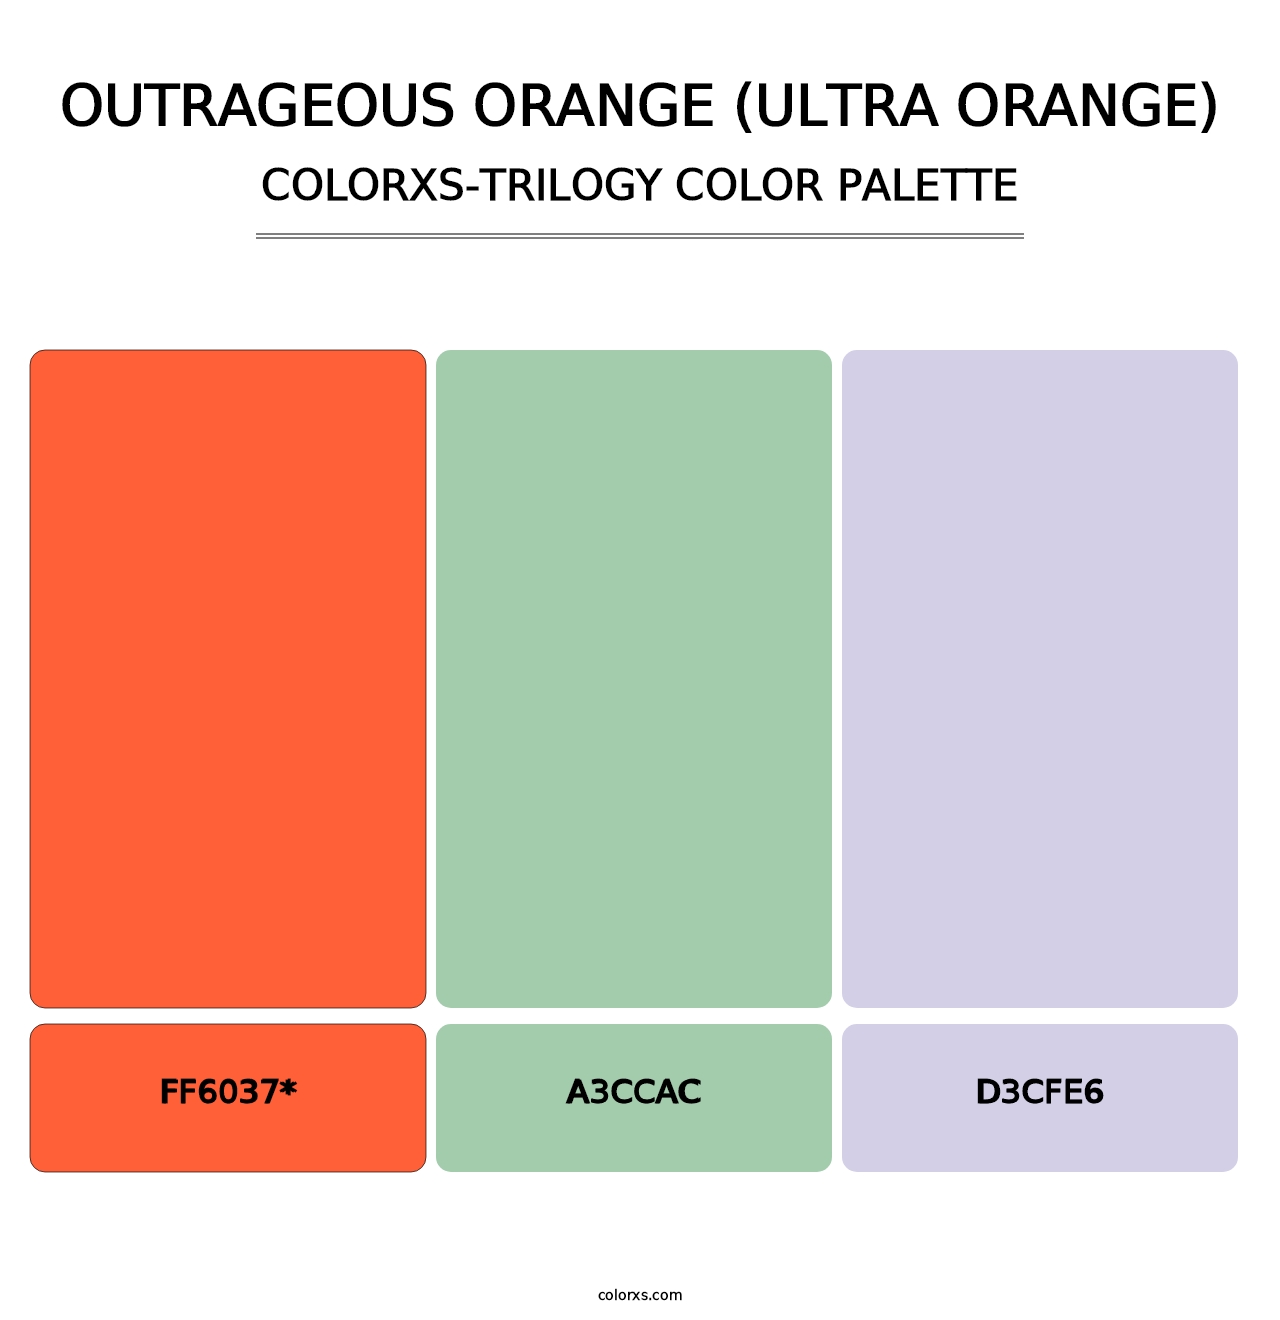 Outrageous Orange (Ultra Orange) - Colorxs Trilogy Palette